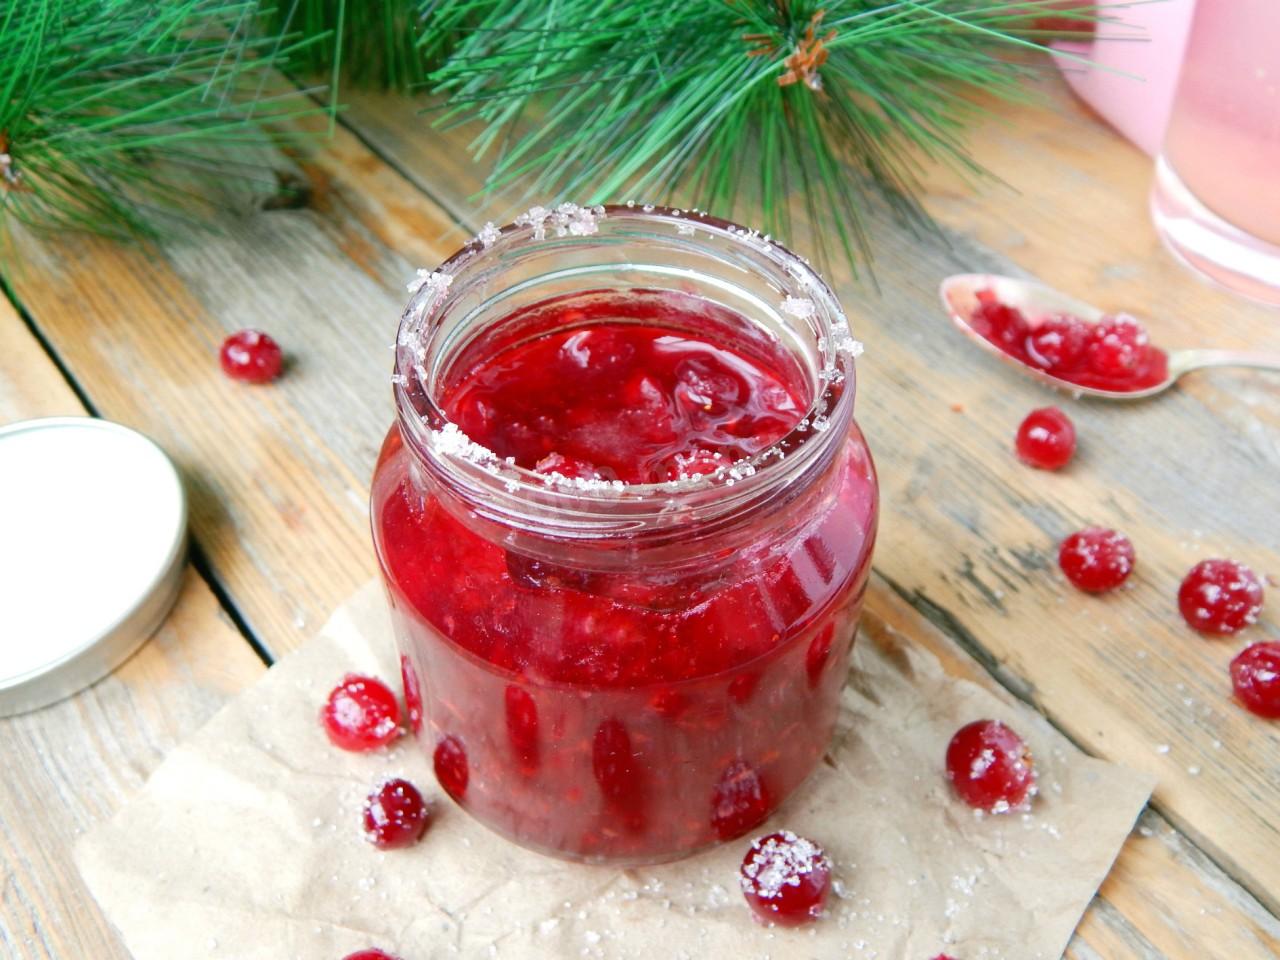 Брусника моченая на зиму: рецепты ягод с сахаром и без варки